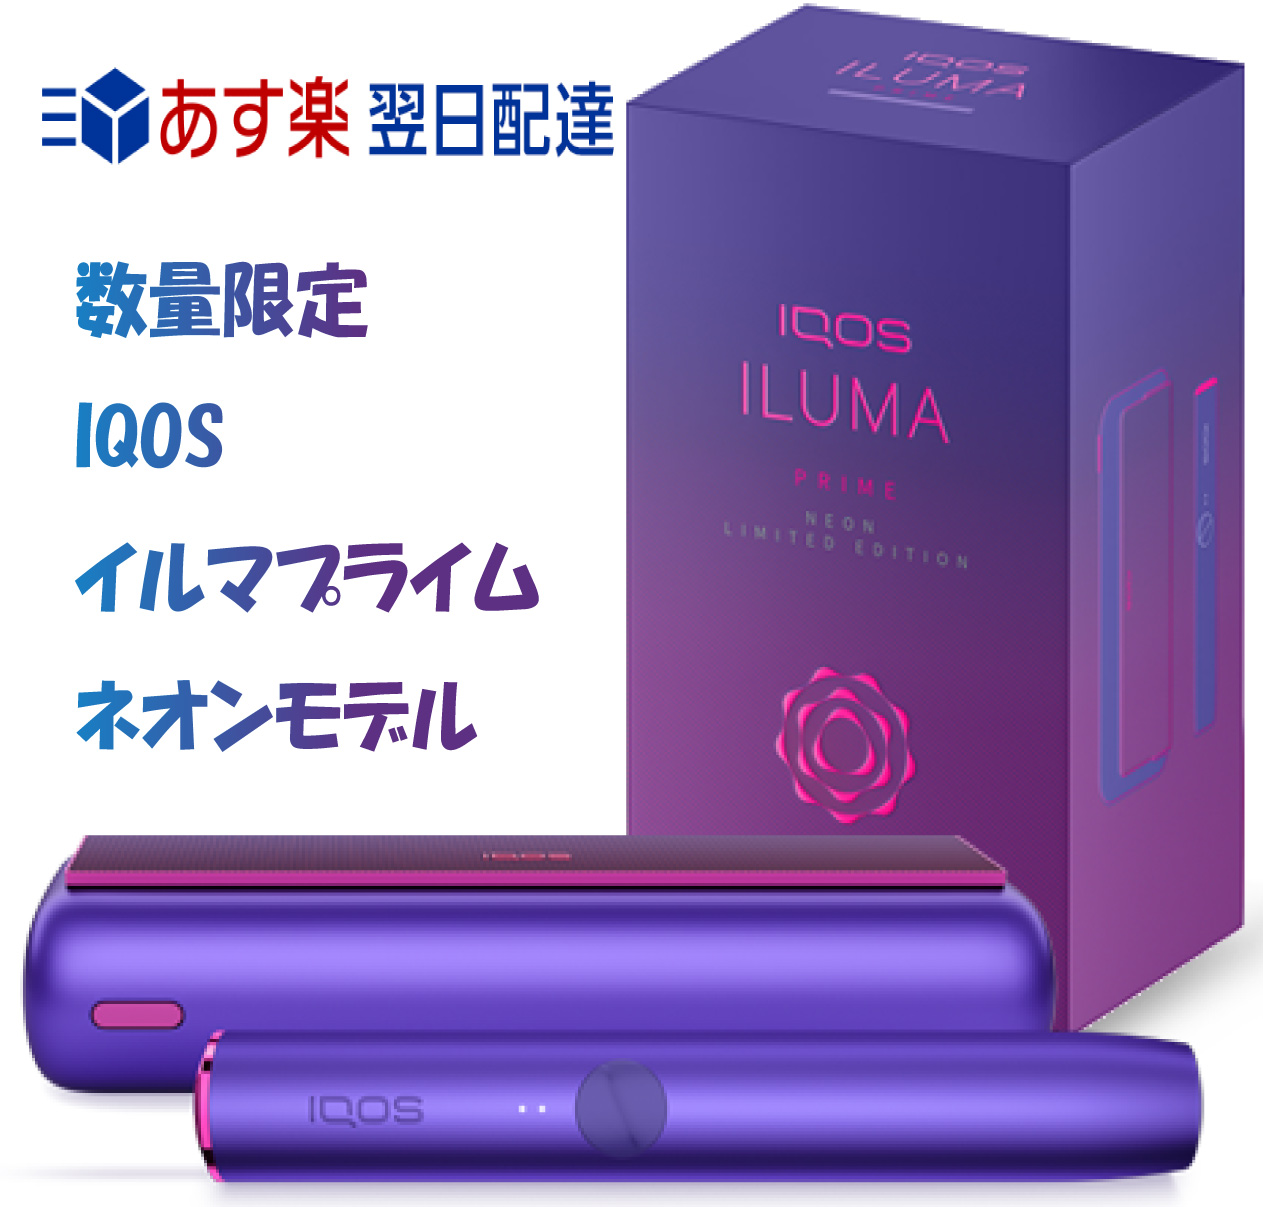 IQOS イルマ ネオン アイコス 新型アイコス ILUMA プライム prime イルマプライム 製品登録済み Neon